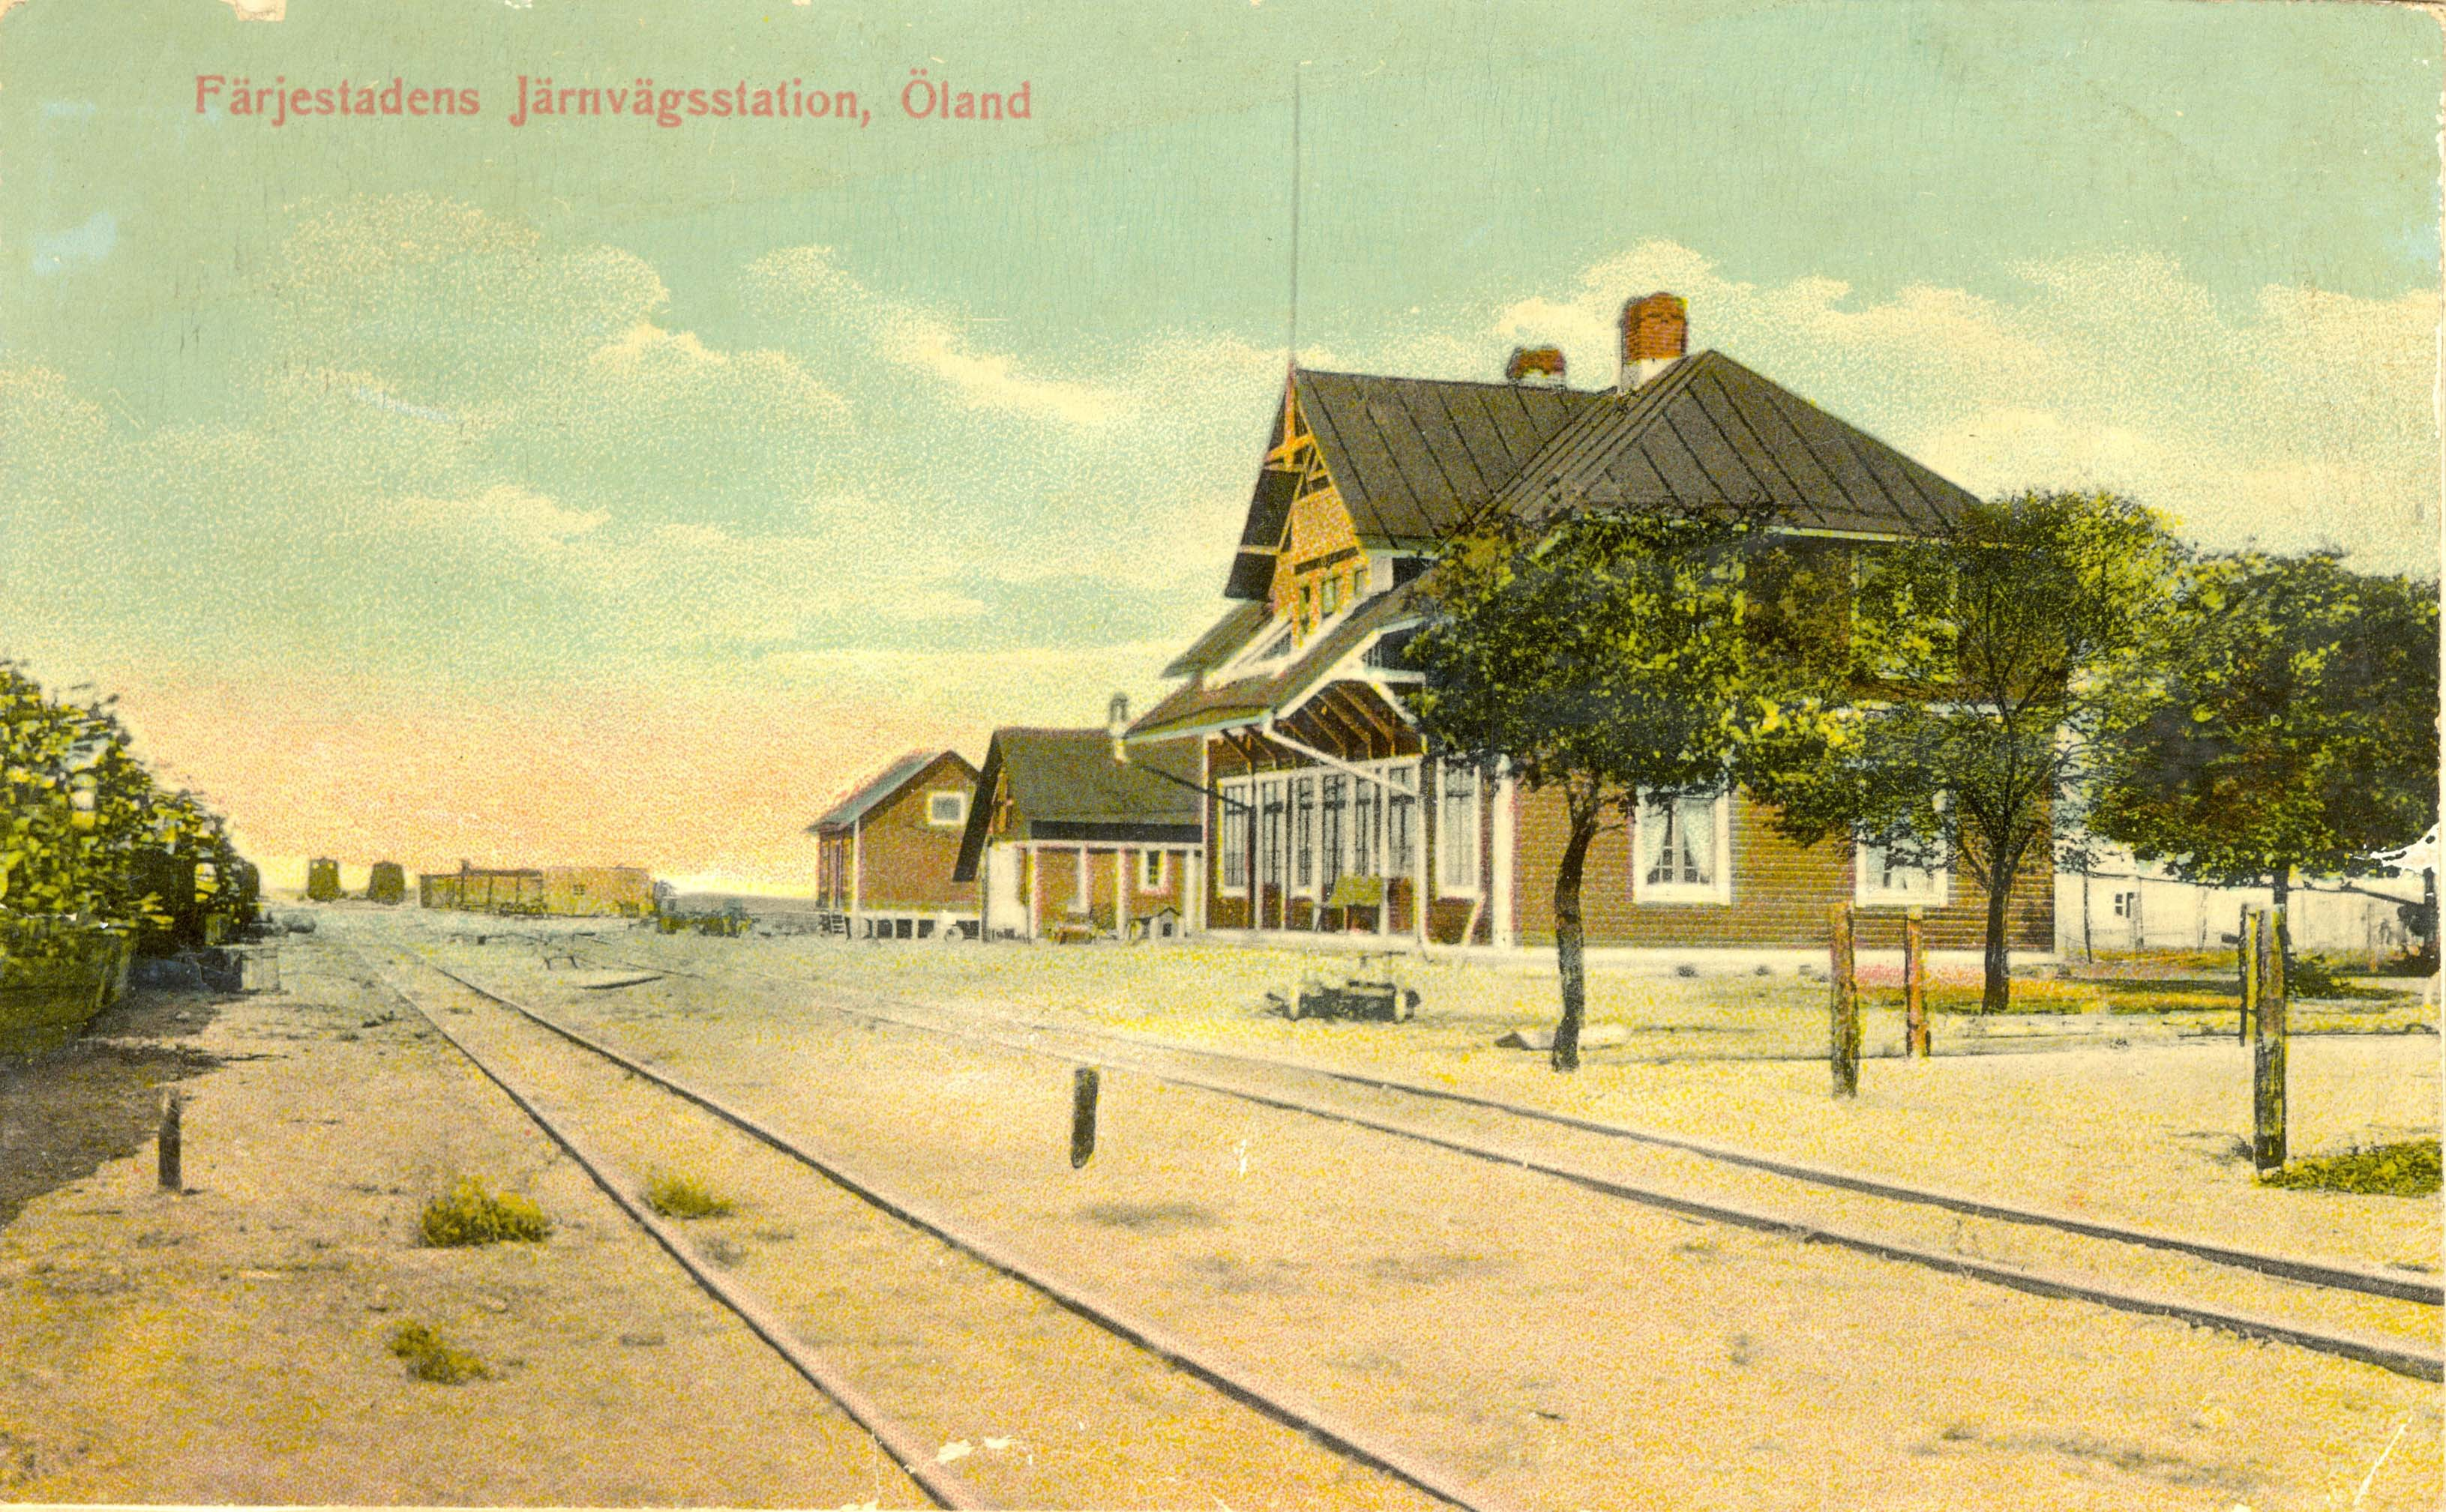 Den gamla järnvägsstationen i Färjestaden.